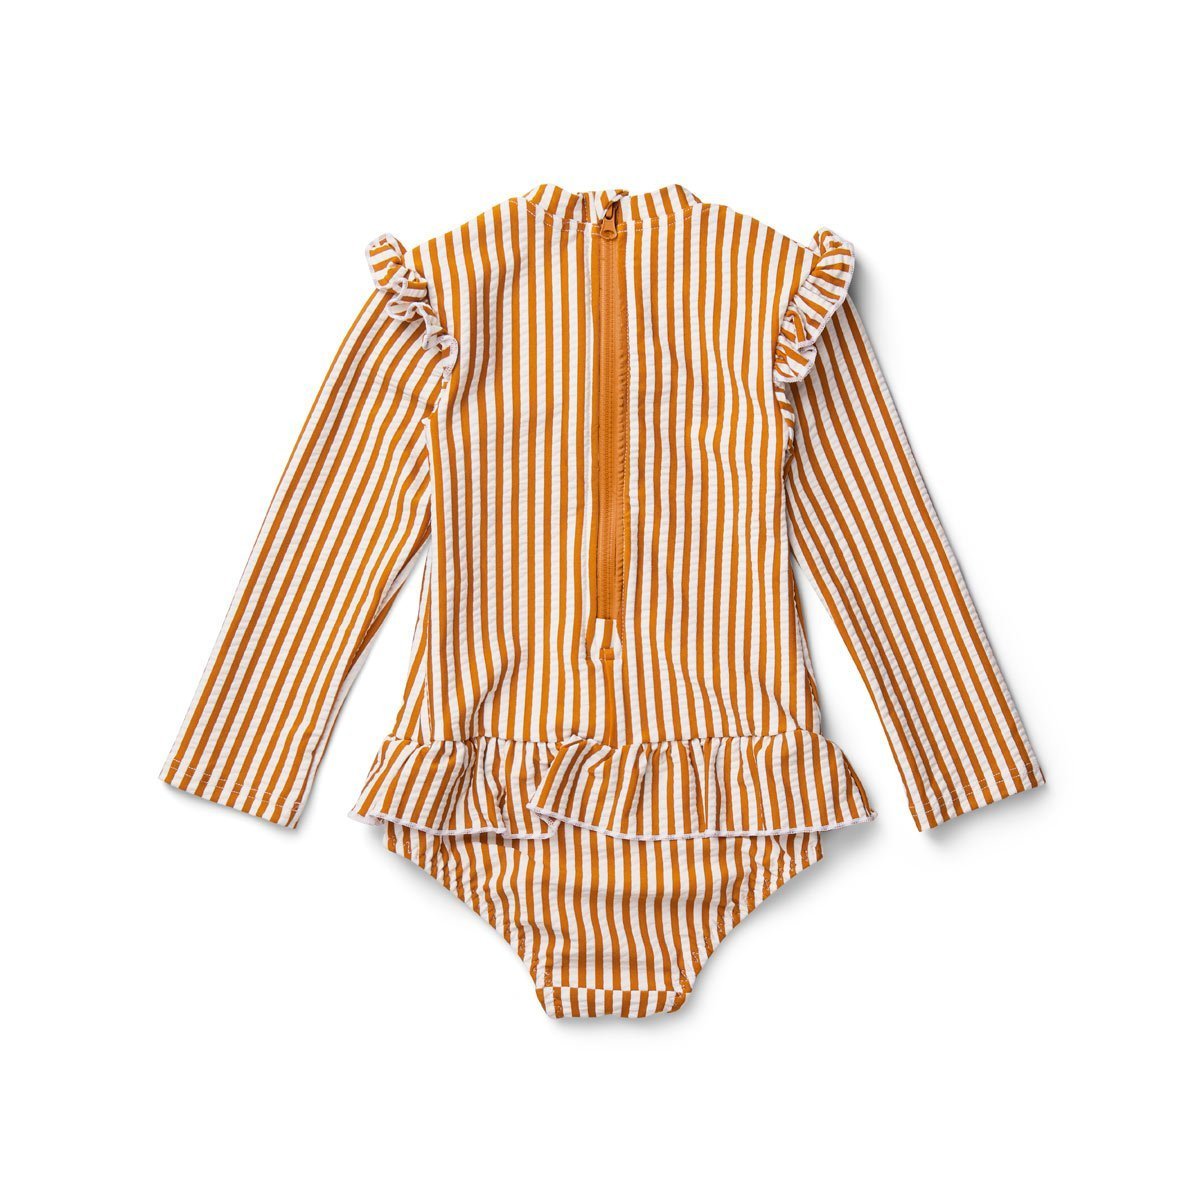 Liewood Sille Swim Jumpsuit Seersucker Stripe Mustard/White - Scandibørn